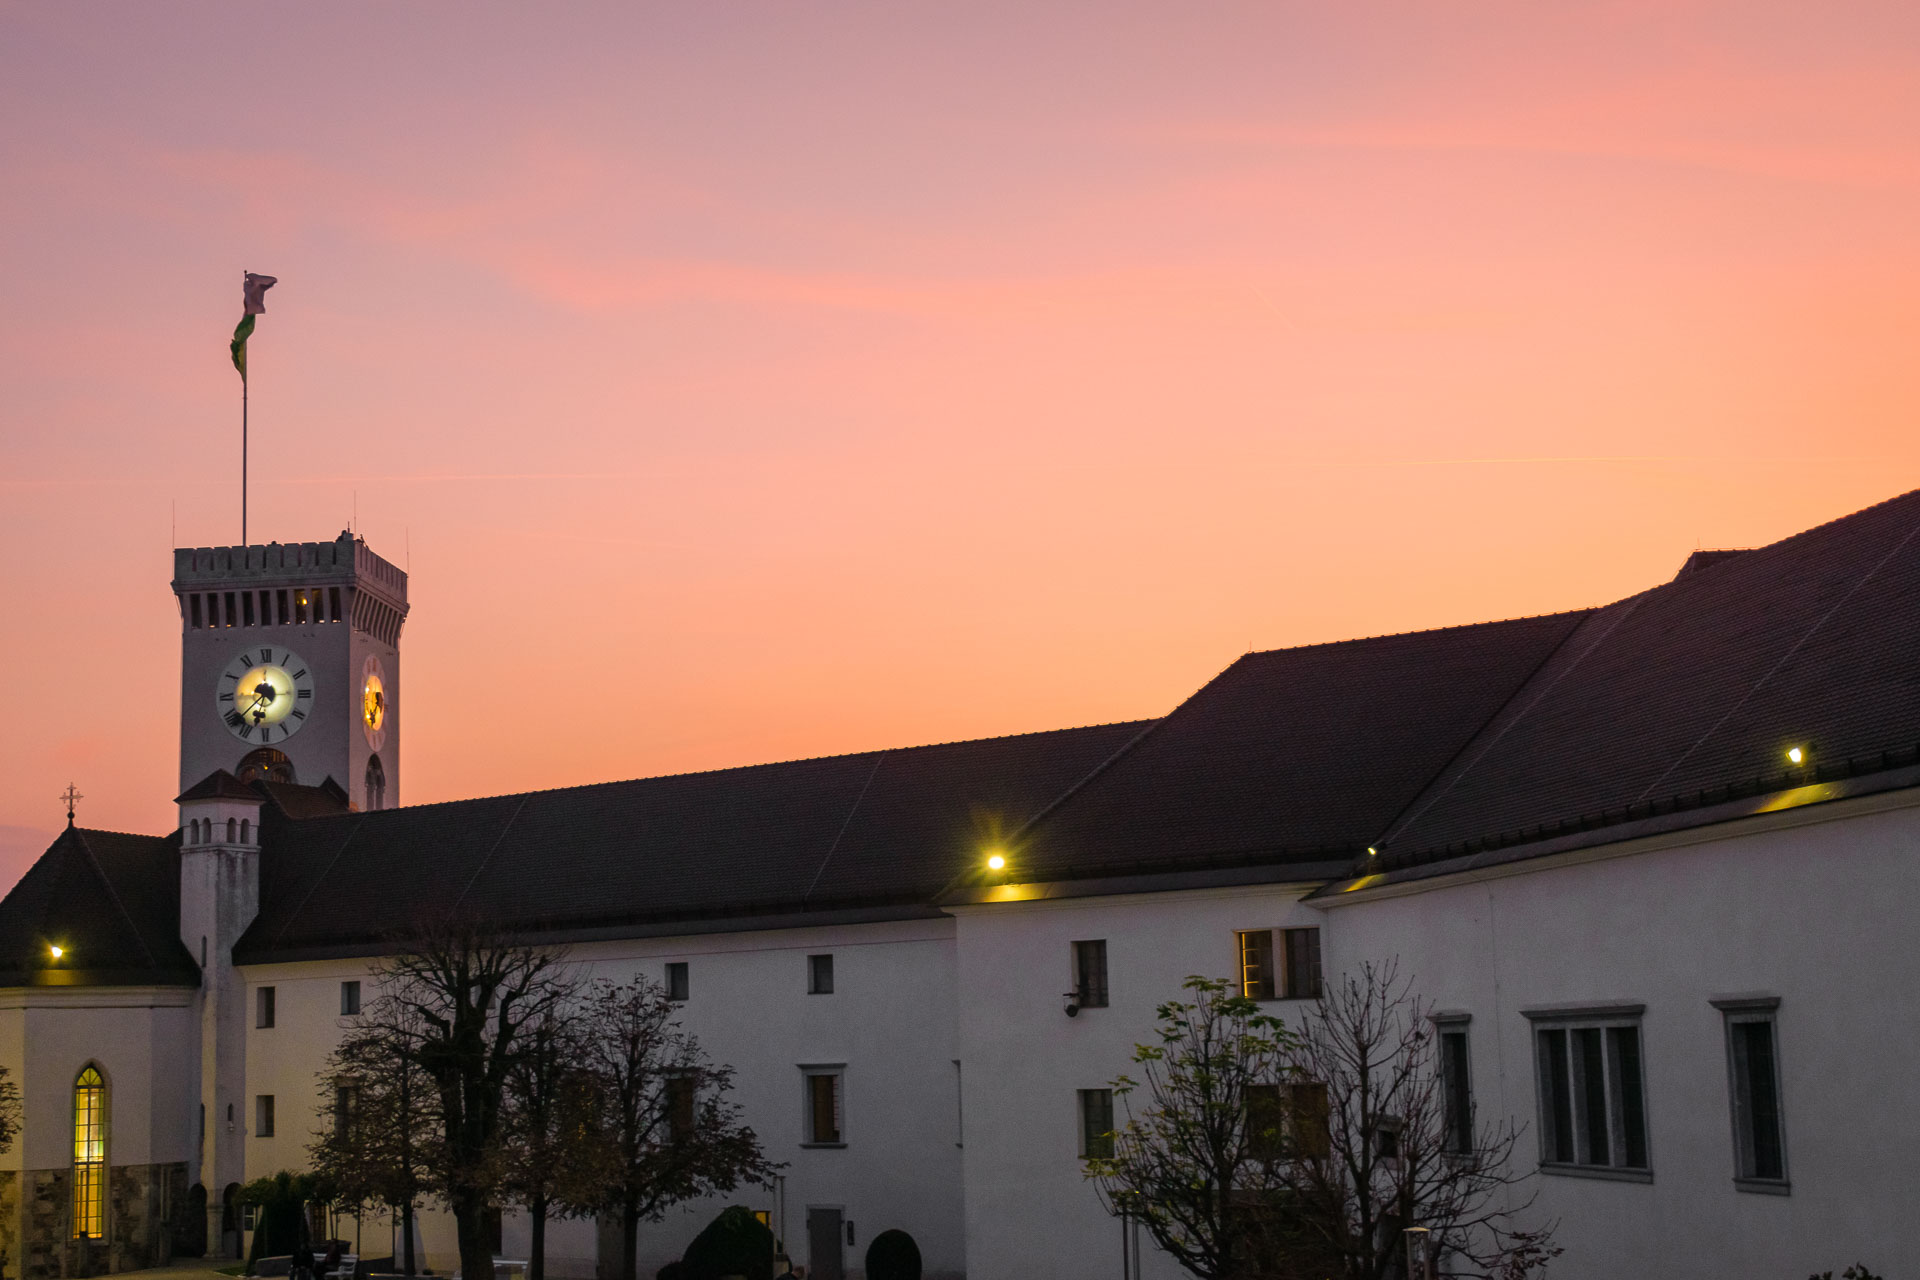 Fazer uma ida ao castelo de Liubliana para ver o céu rosado durante o pôr do sol